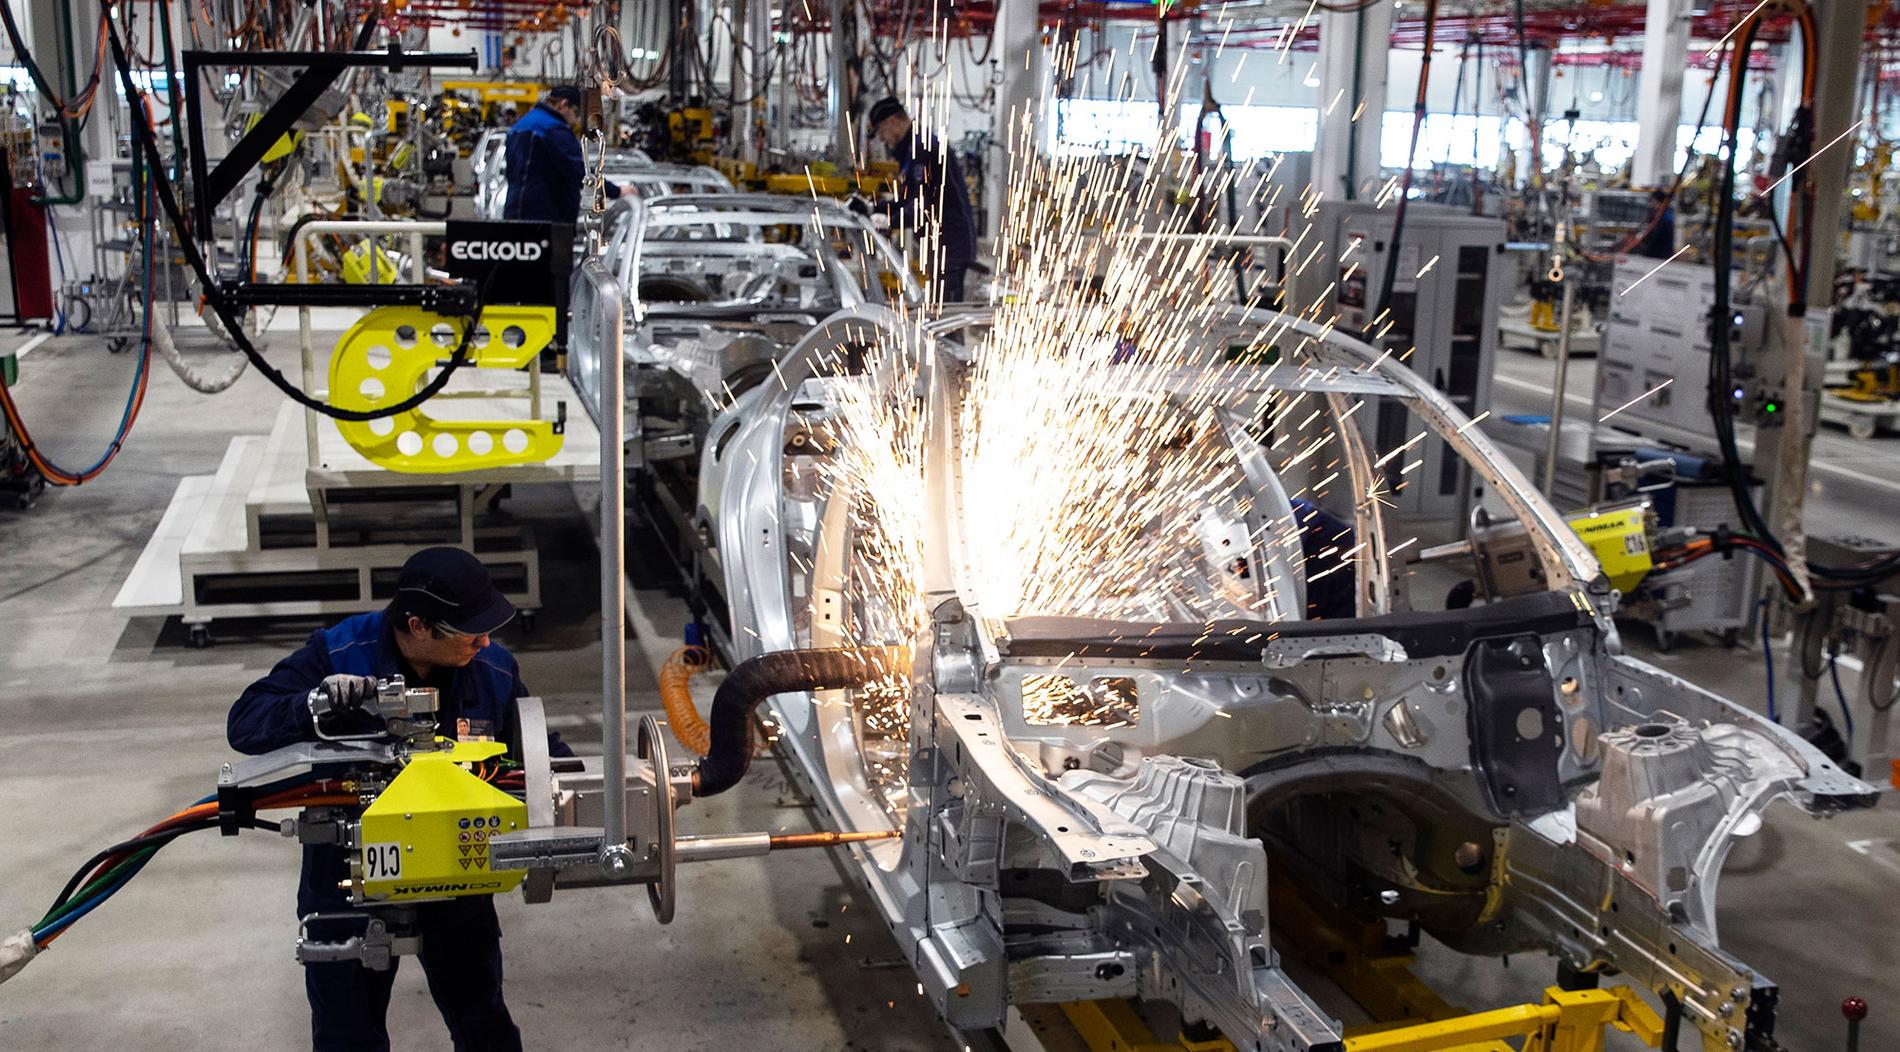 Tillverkningsindustrin kan få nya uppgifter i krislägen. Bild från Mercedes biltillverkning.